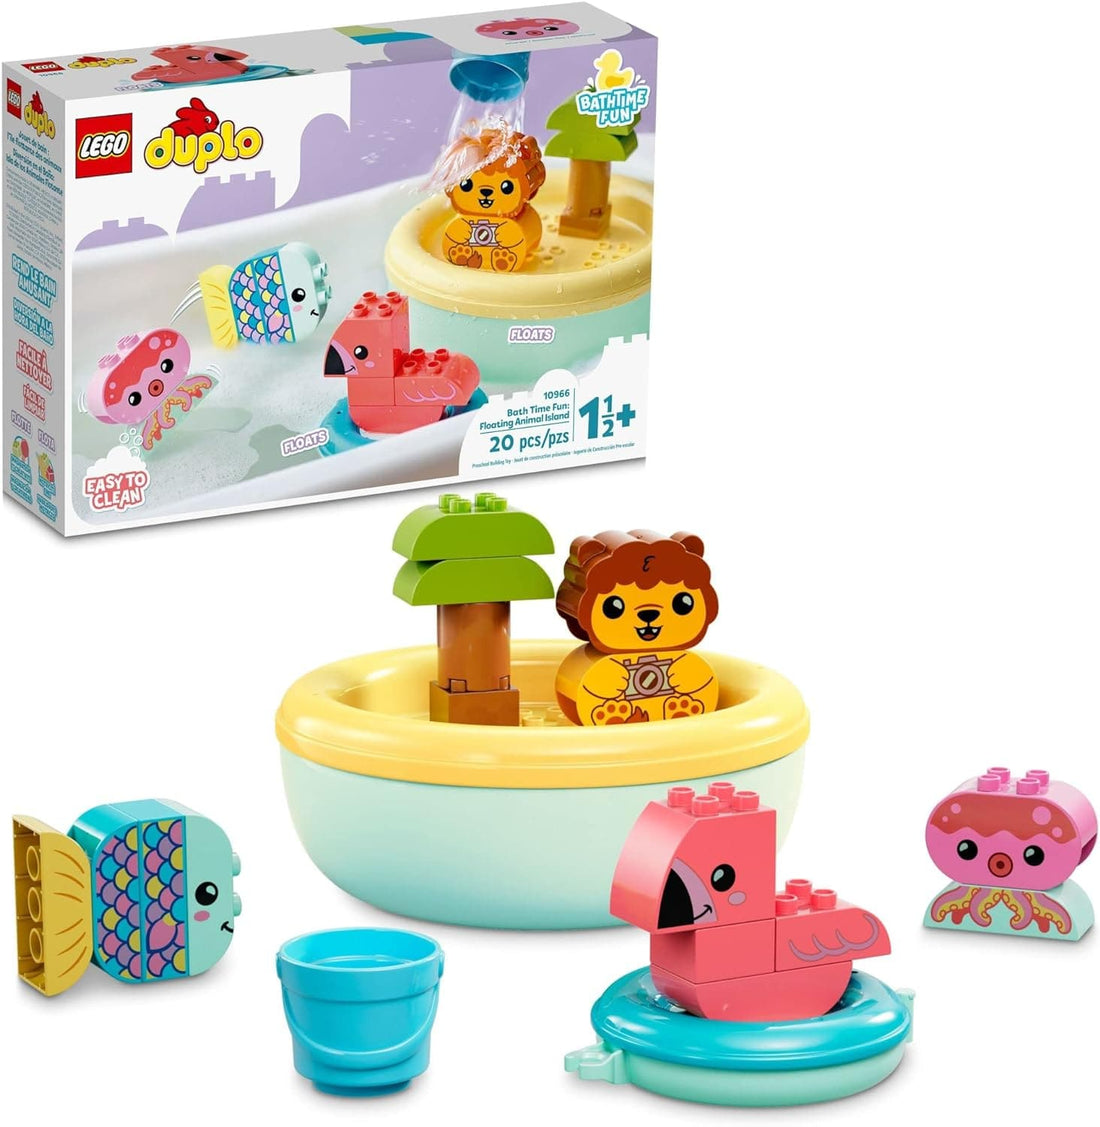 LEGO DUPLO Bath Time Fun: Floating Animal Island Bath Toy - best price from Maltashopper.com 10966